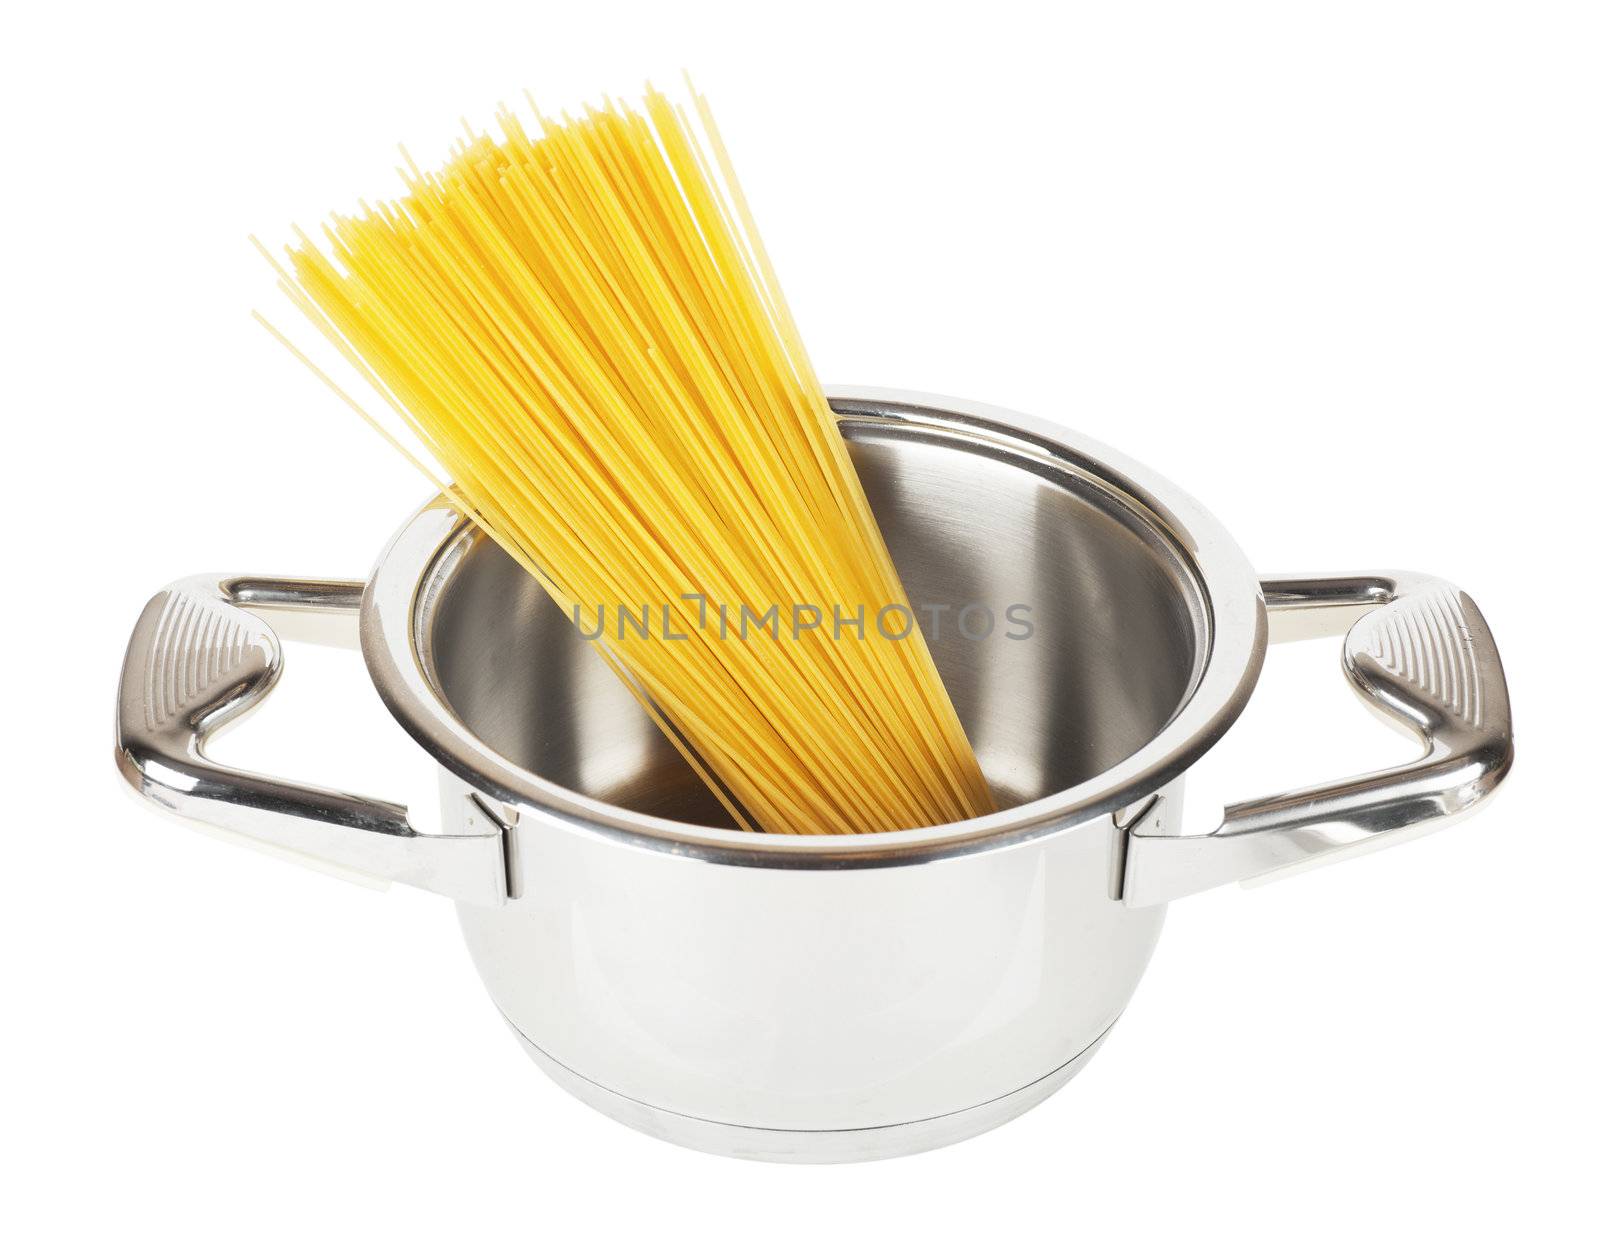 Spaghetti by AGorohov